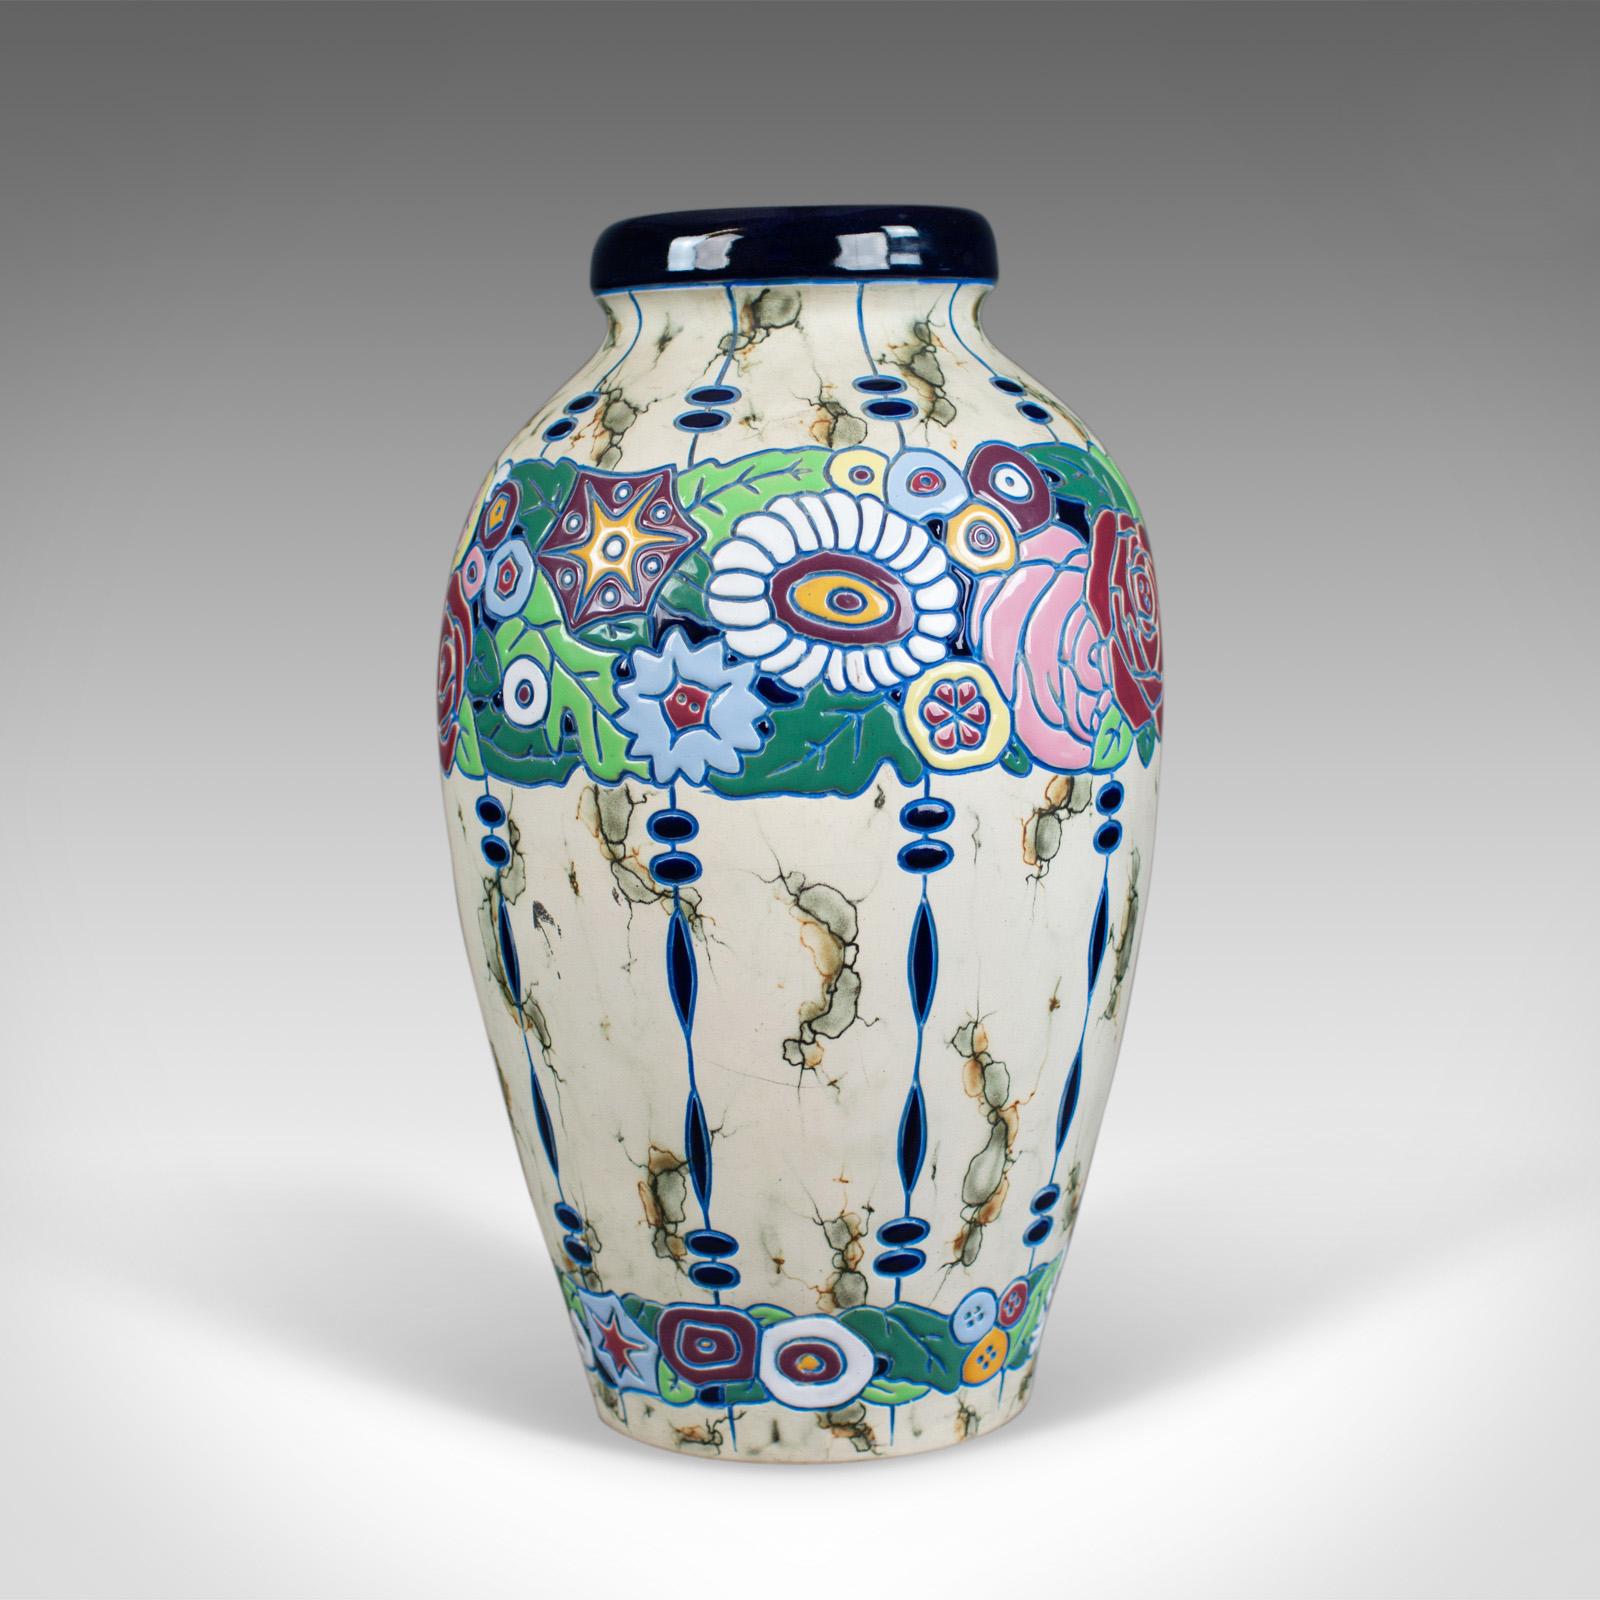 Il s'agit d'un grand vase balustre vintage, un vase en poterie Amphora tchécoslovaque datant du milieu du 20e siècle.

De forme classique et bien proportionnée
Fabrication de qualité, exempte de dommages
Base marquée 